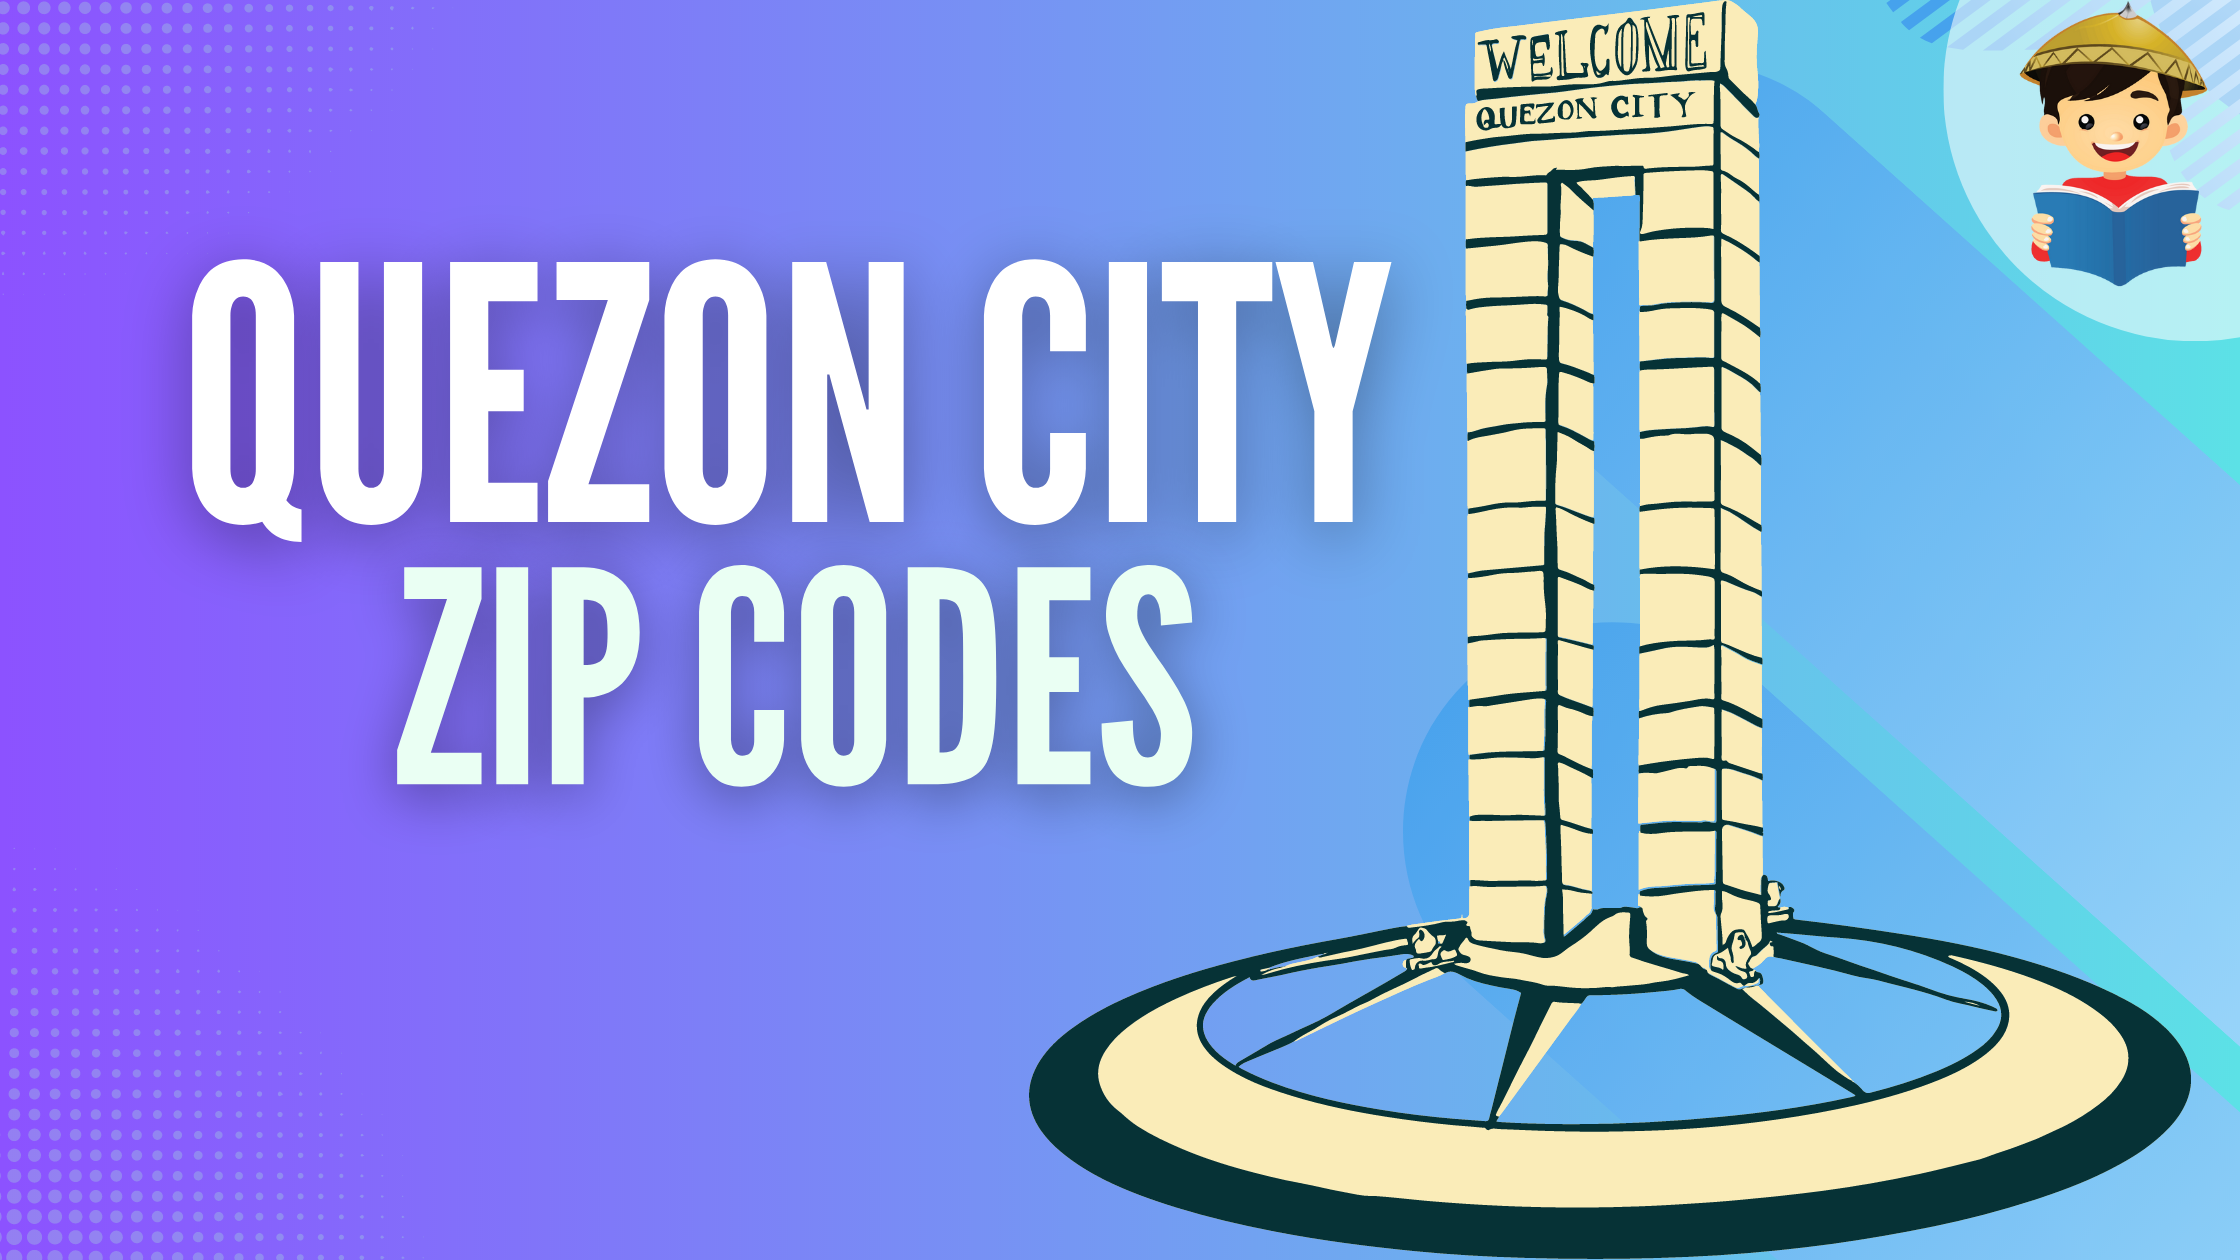 quezon city zip code featured image